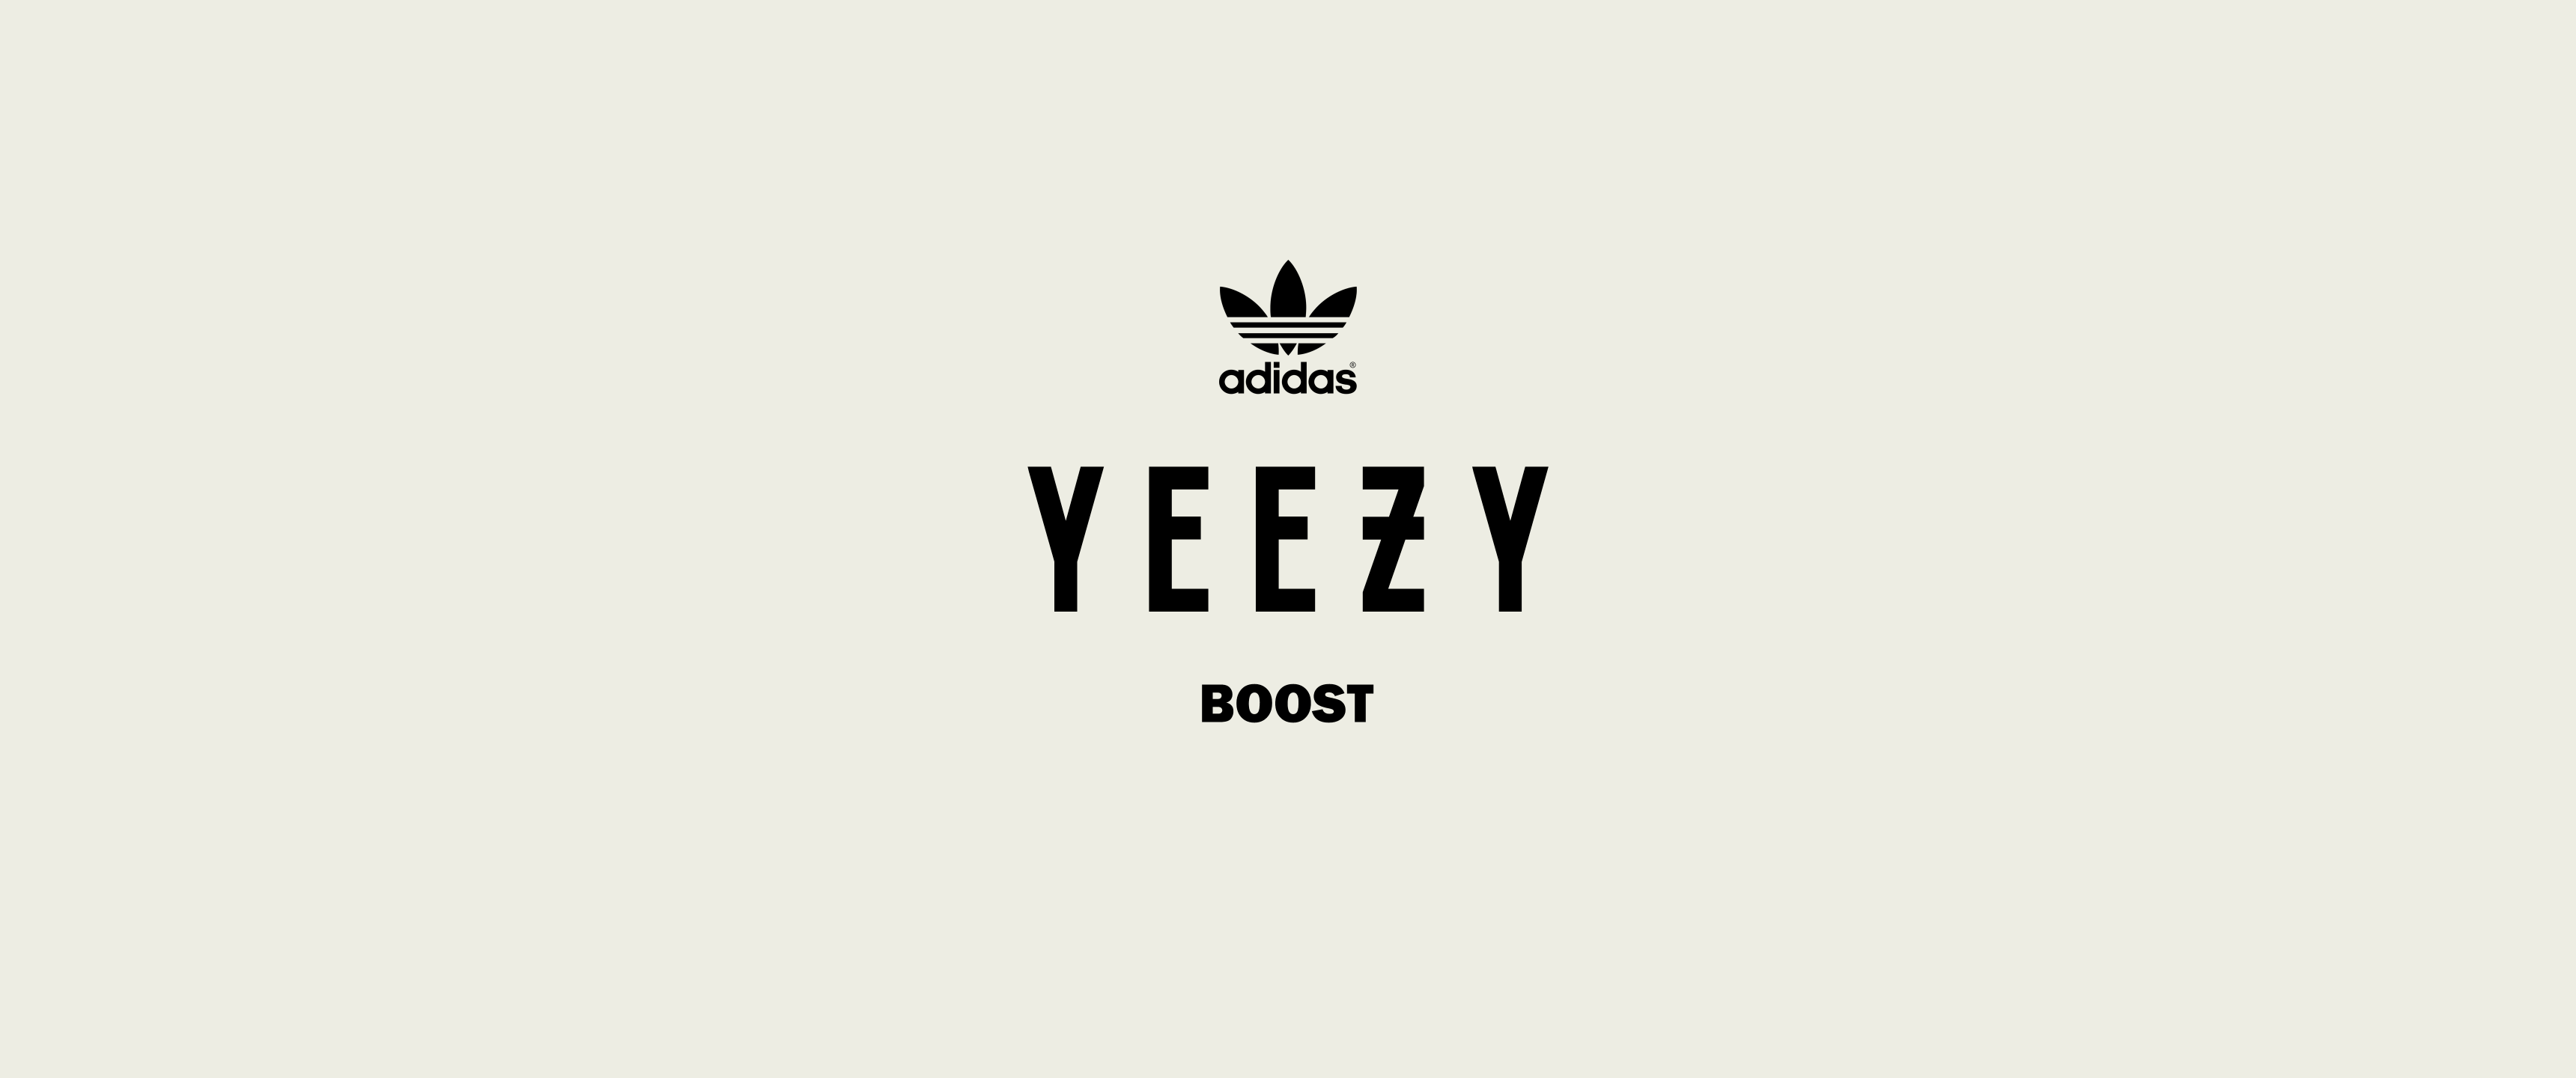 Yeezy Boost Logo - Yeezy Logos